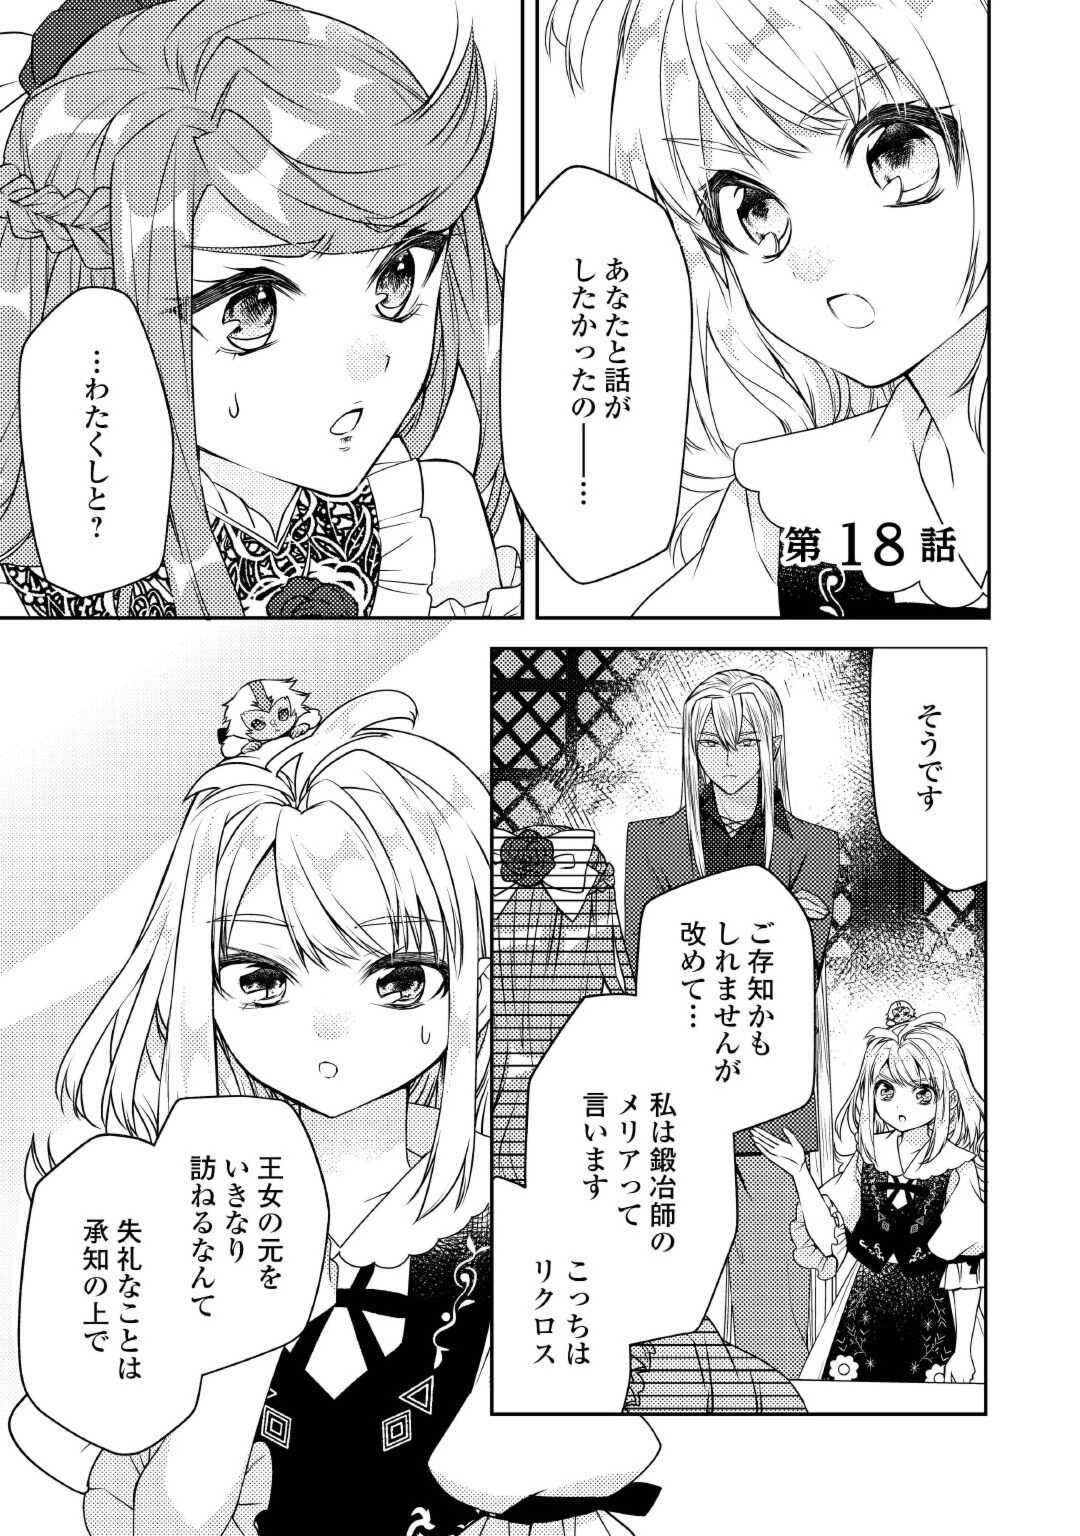 Toaru Chisana Mura No Chi Tona Tanya Ya San - Chapter 18 - Page 1